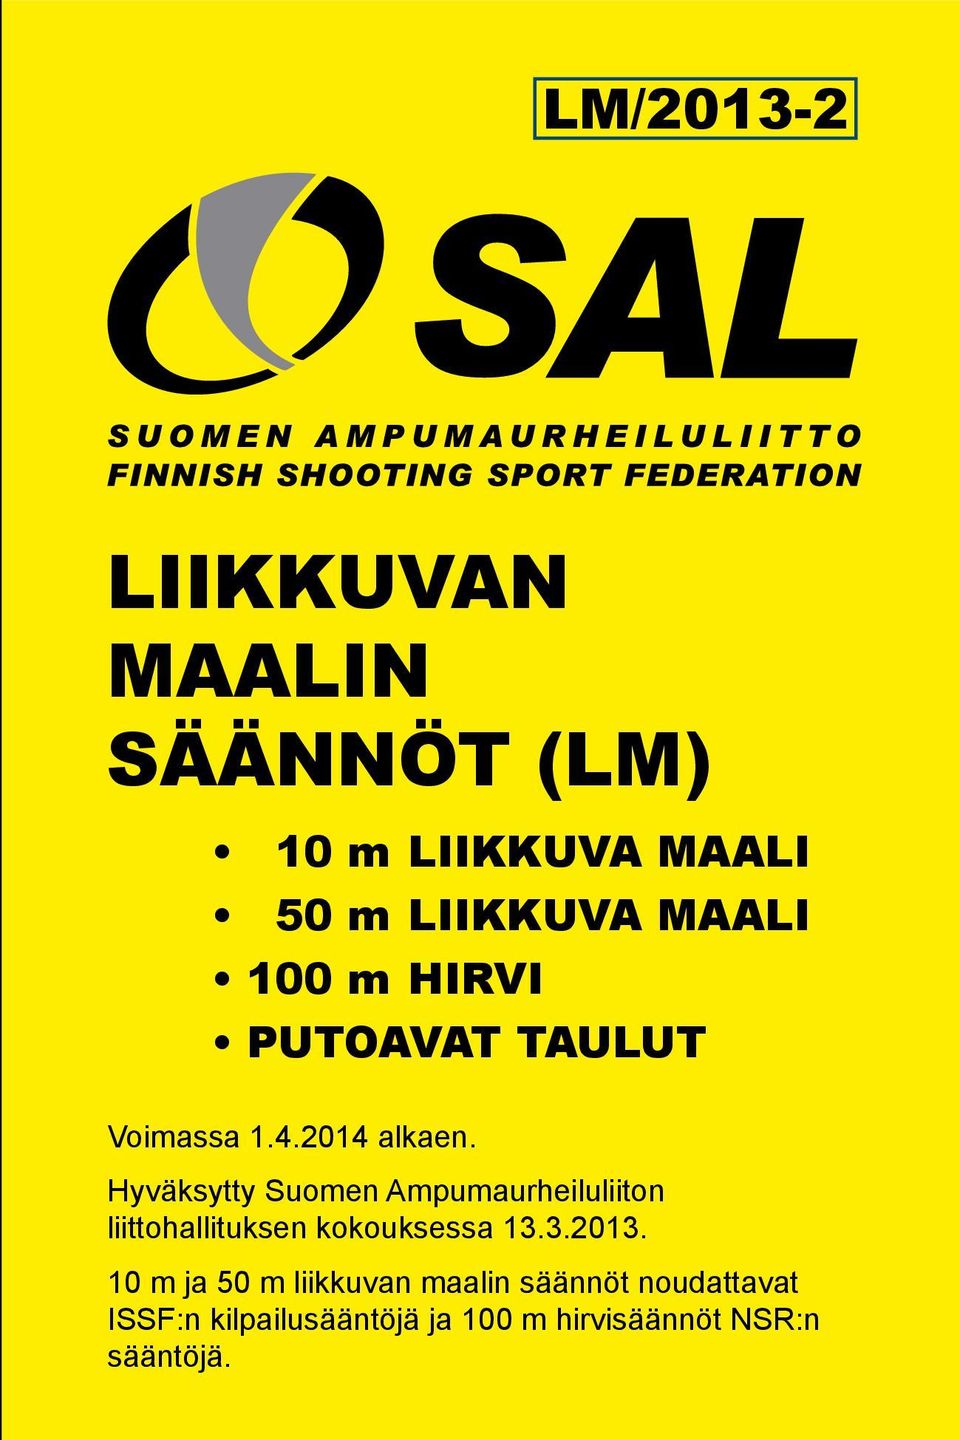 Hyväksytty Suomen Ampumaurheiluliiton liittohallituksen kokouksessa 13.3.2013.